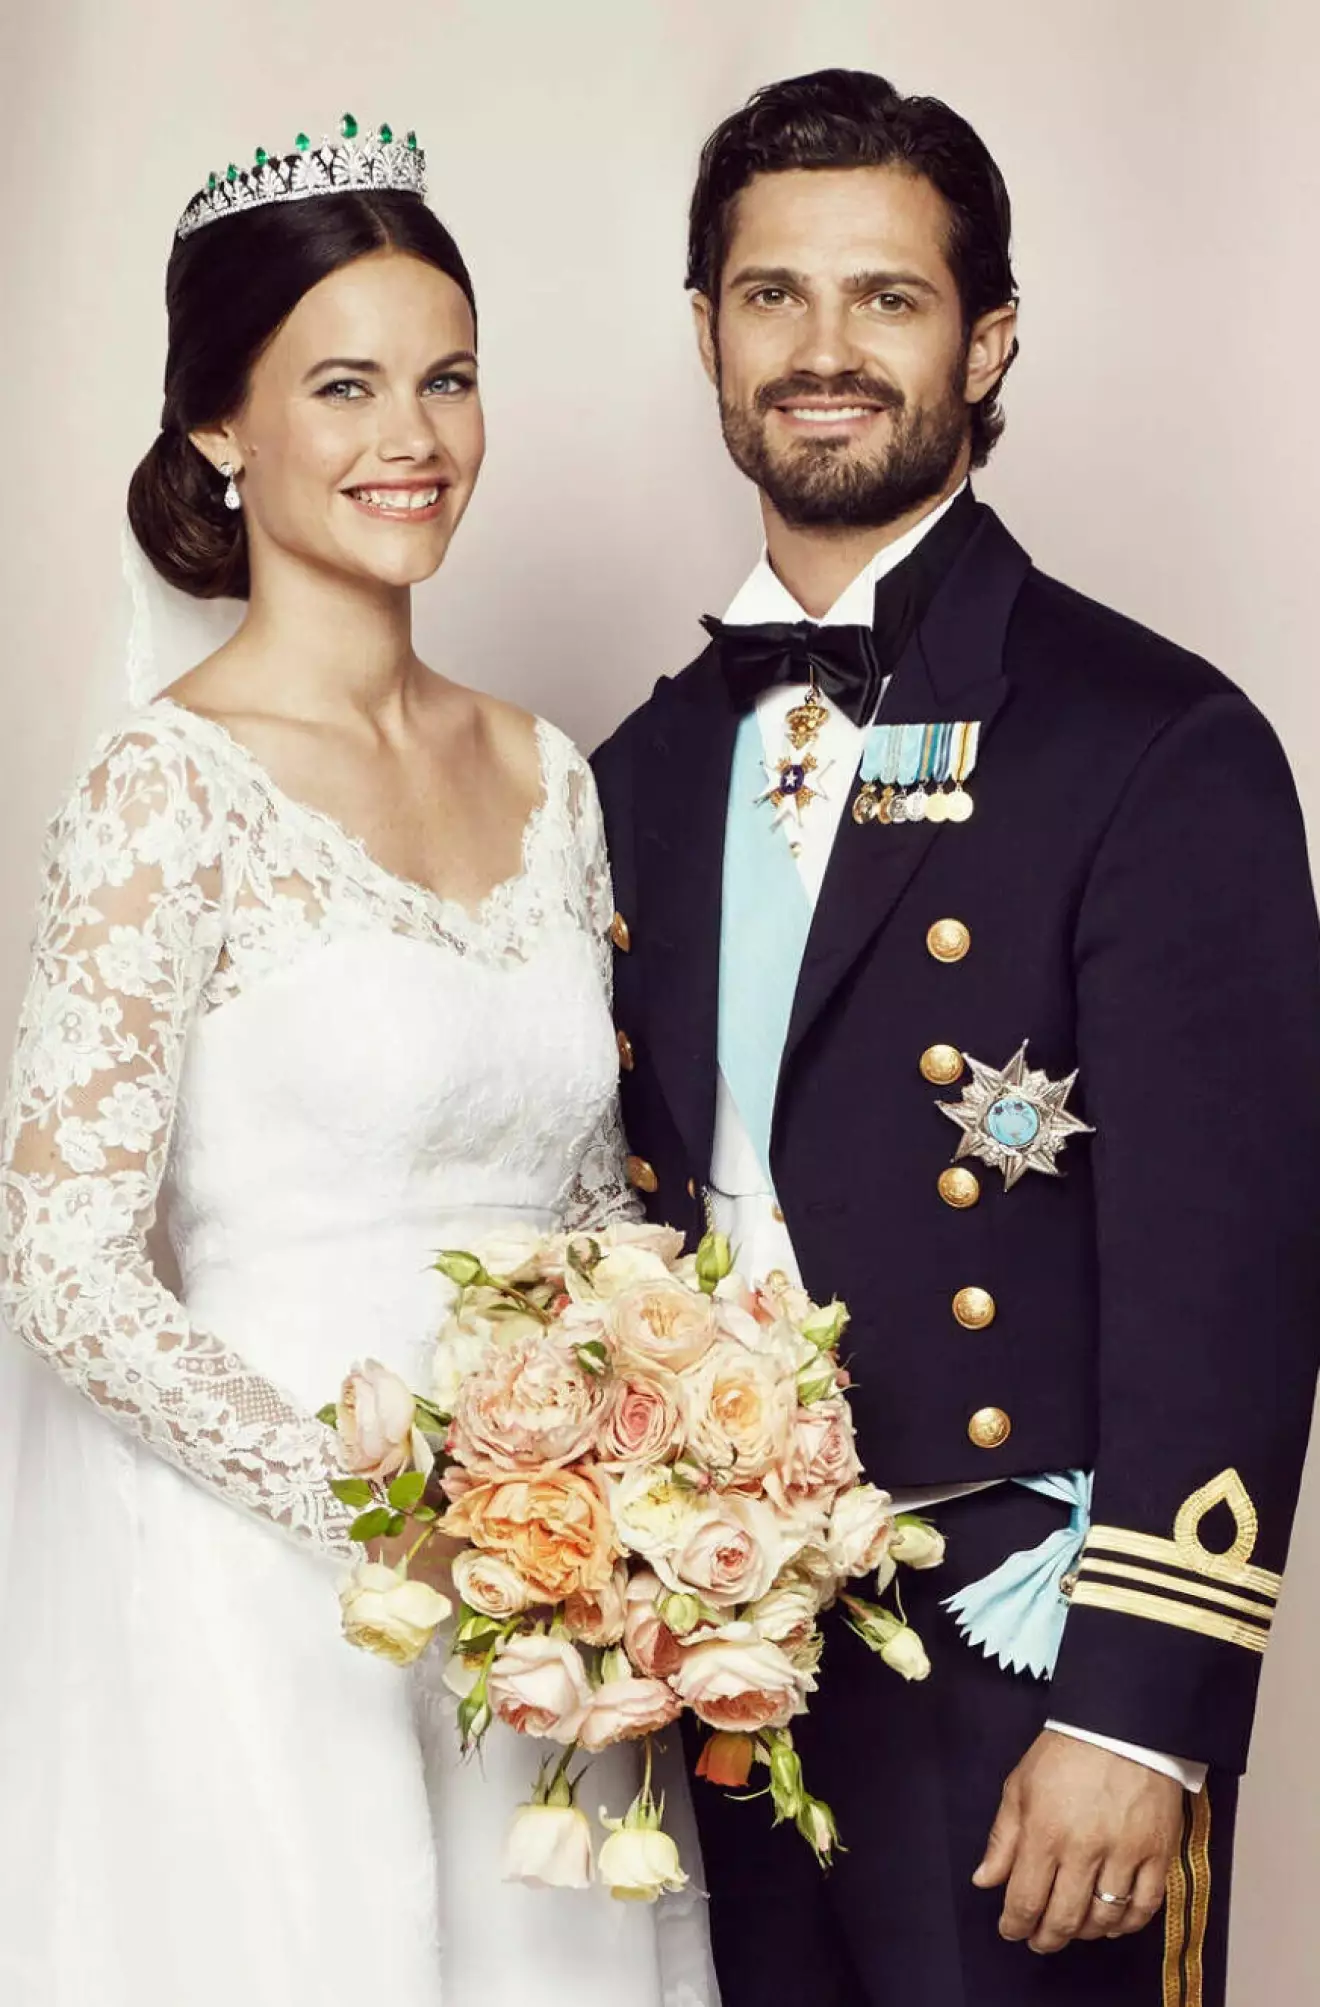 Prinsessan Sofia och prins Carl Philip på sin officiella bröllopsbild